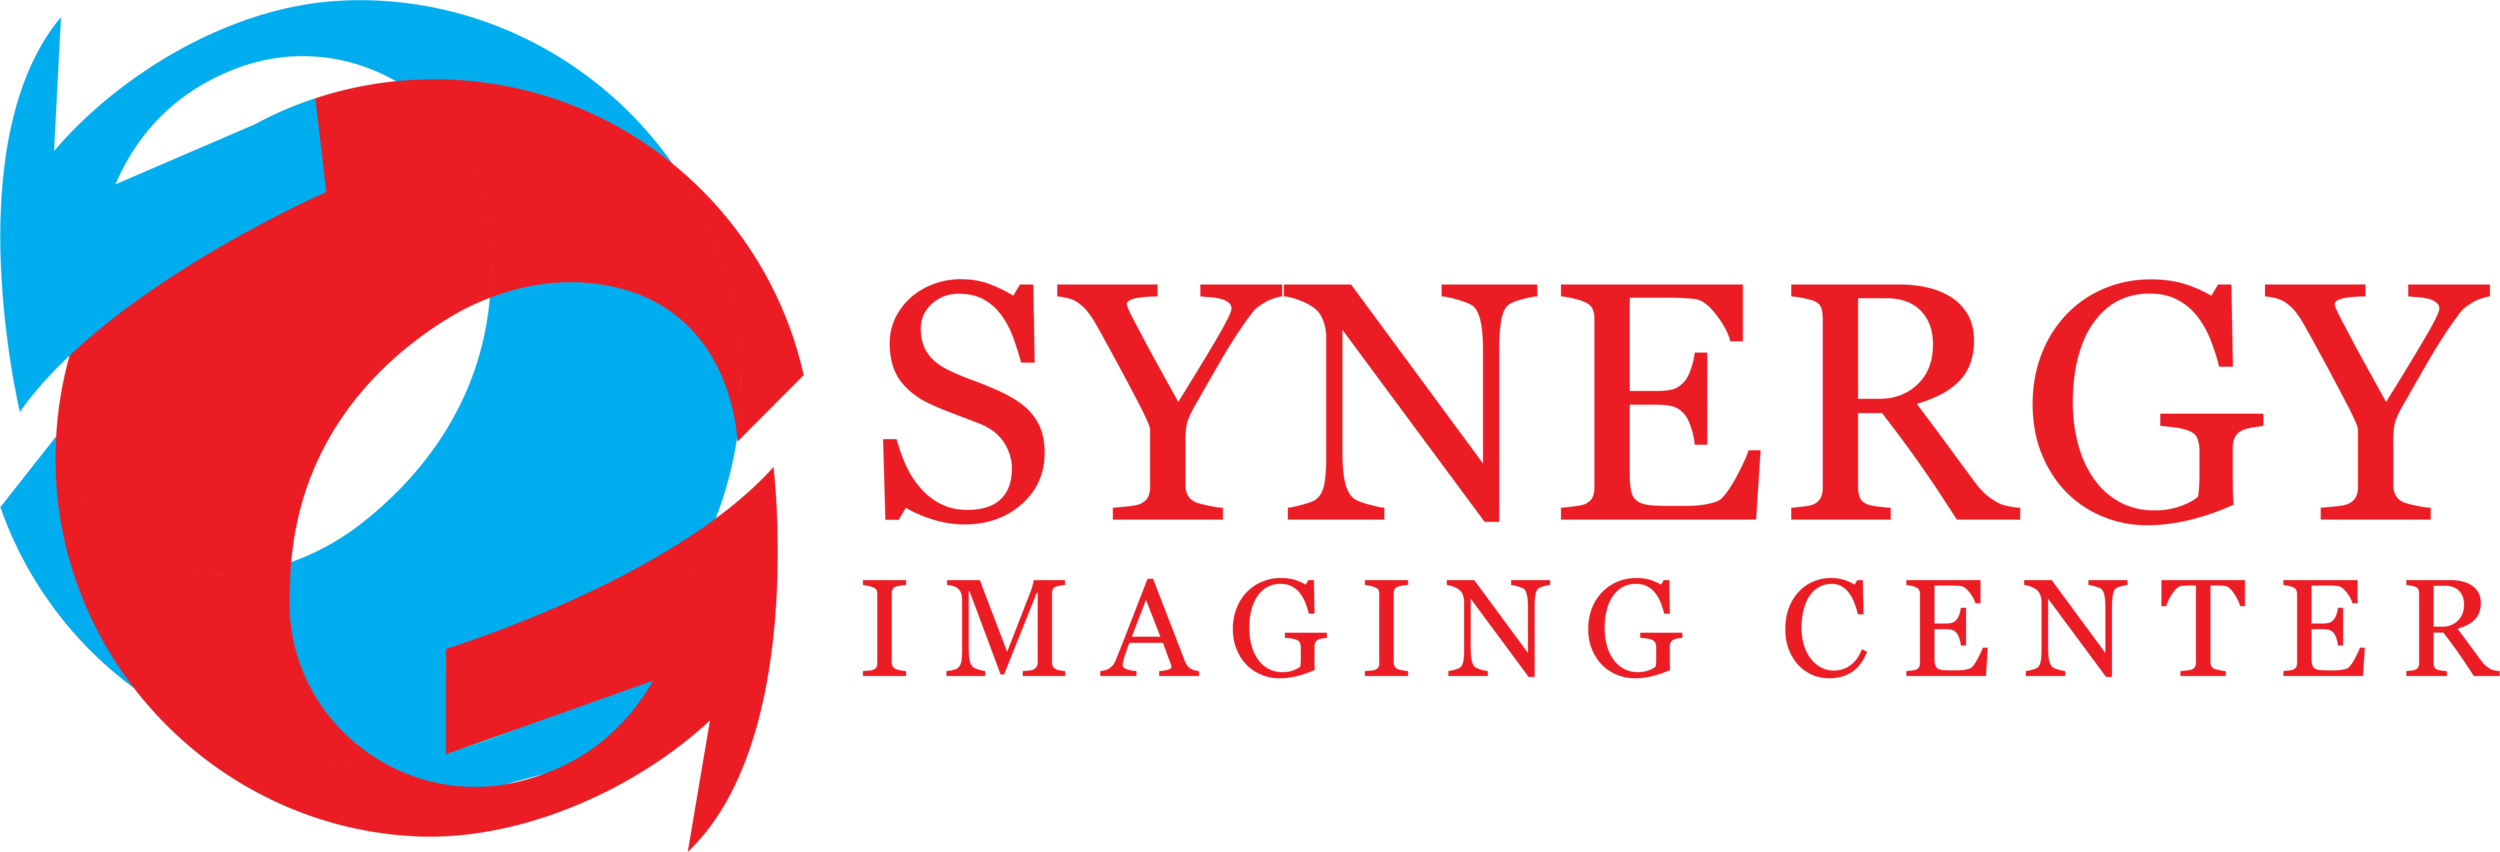 Synergy Imaging Center